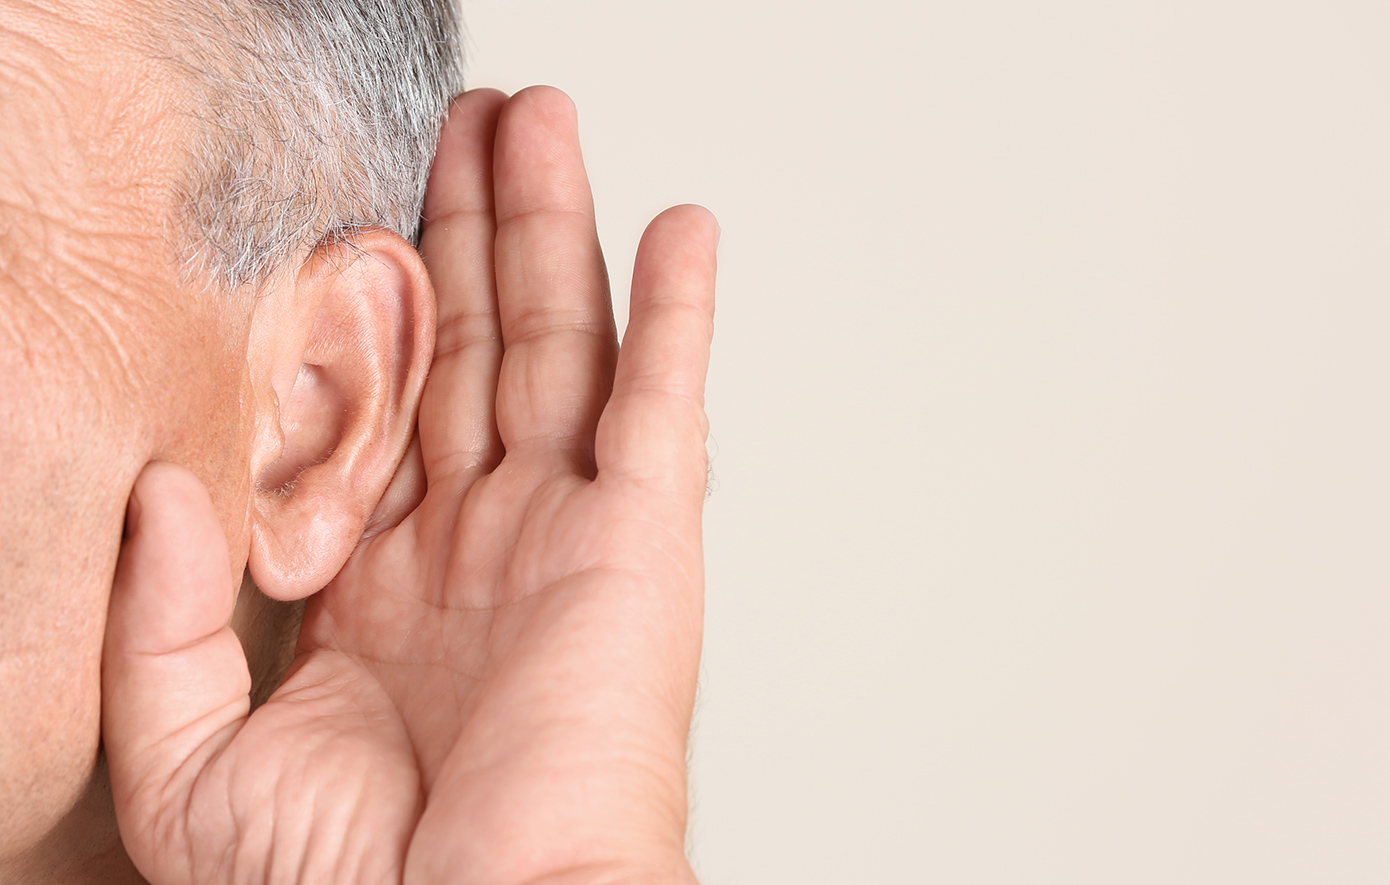 Πρόβλημα με την ακοή; Ελέγξτε το σάκχαρό σας